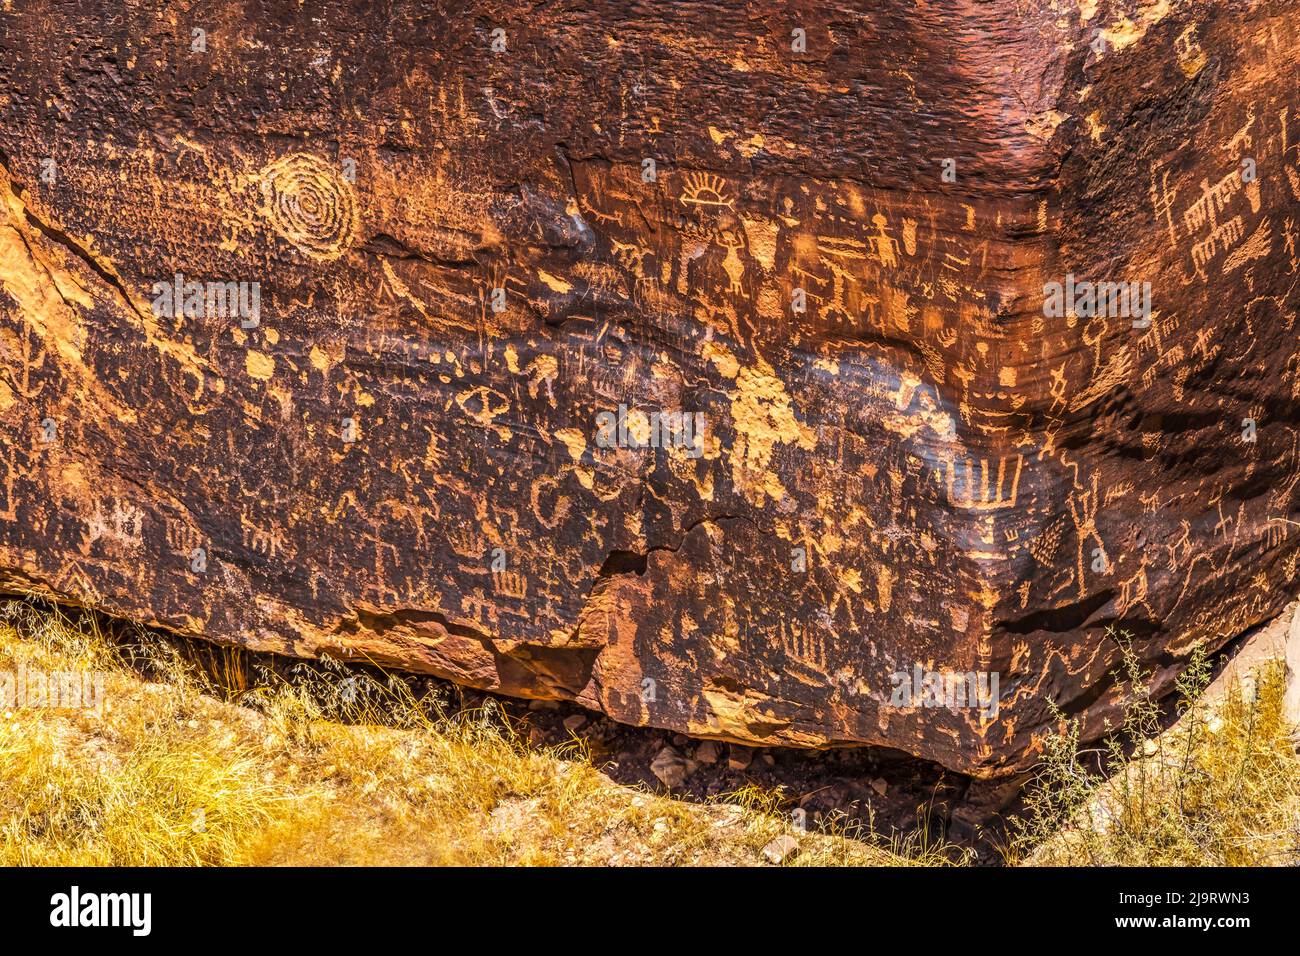 Pétroglyphes indiens, journal Rock, parc national de Petrified Forest, Arizona. Symboles anciens créés entre 1499 BC et 1000 AD rayés sur le rocher Banque D'Images